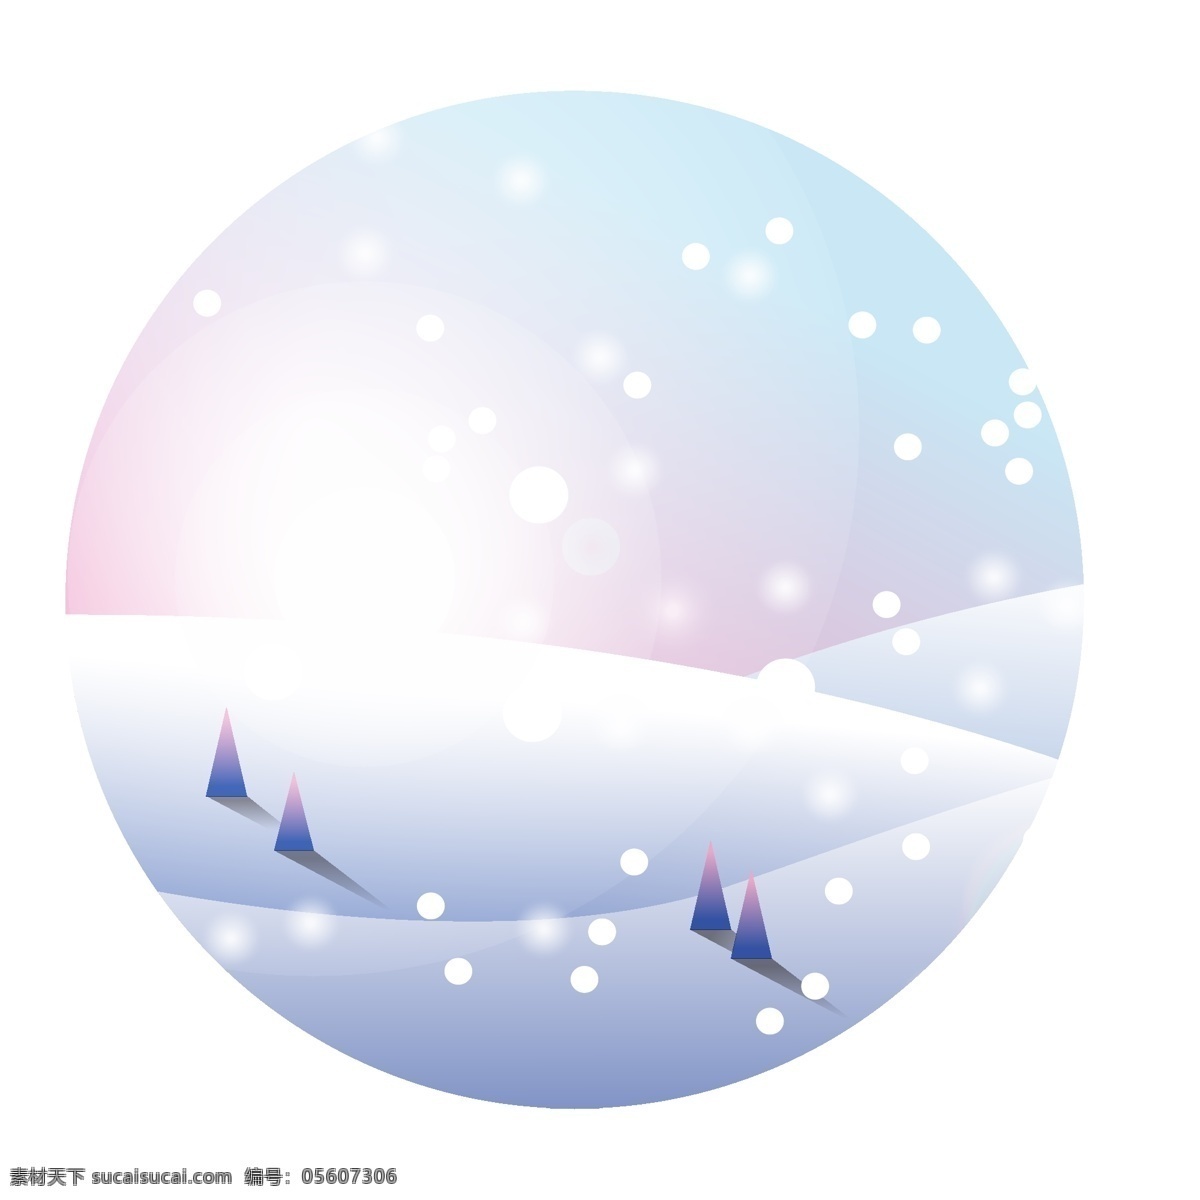 山峰 雪景 手绘 矢量图